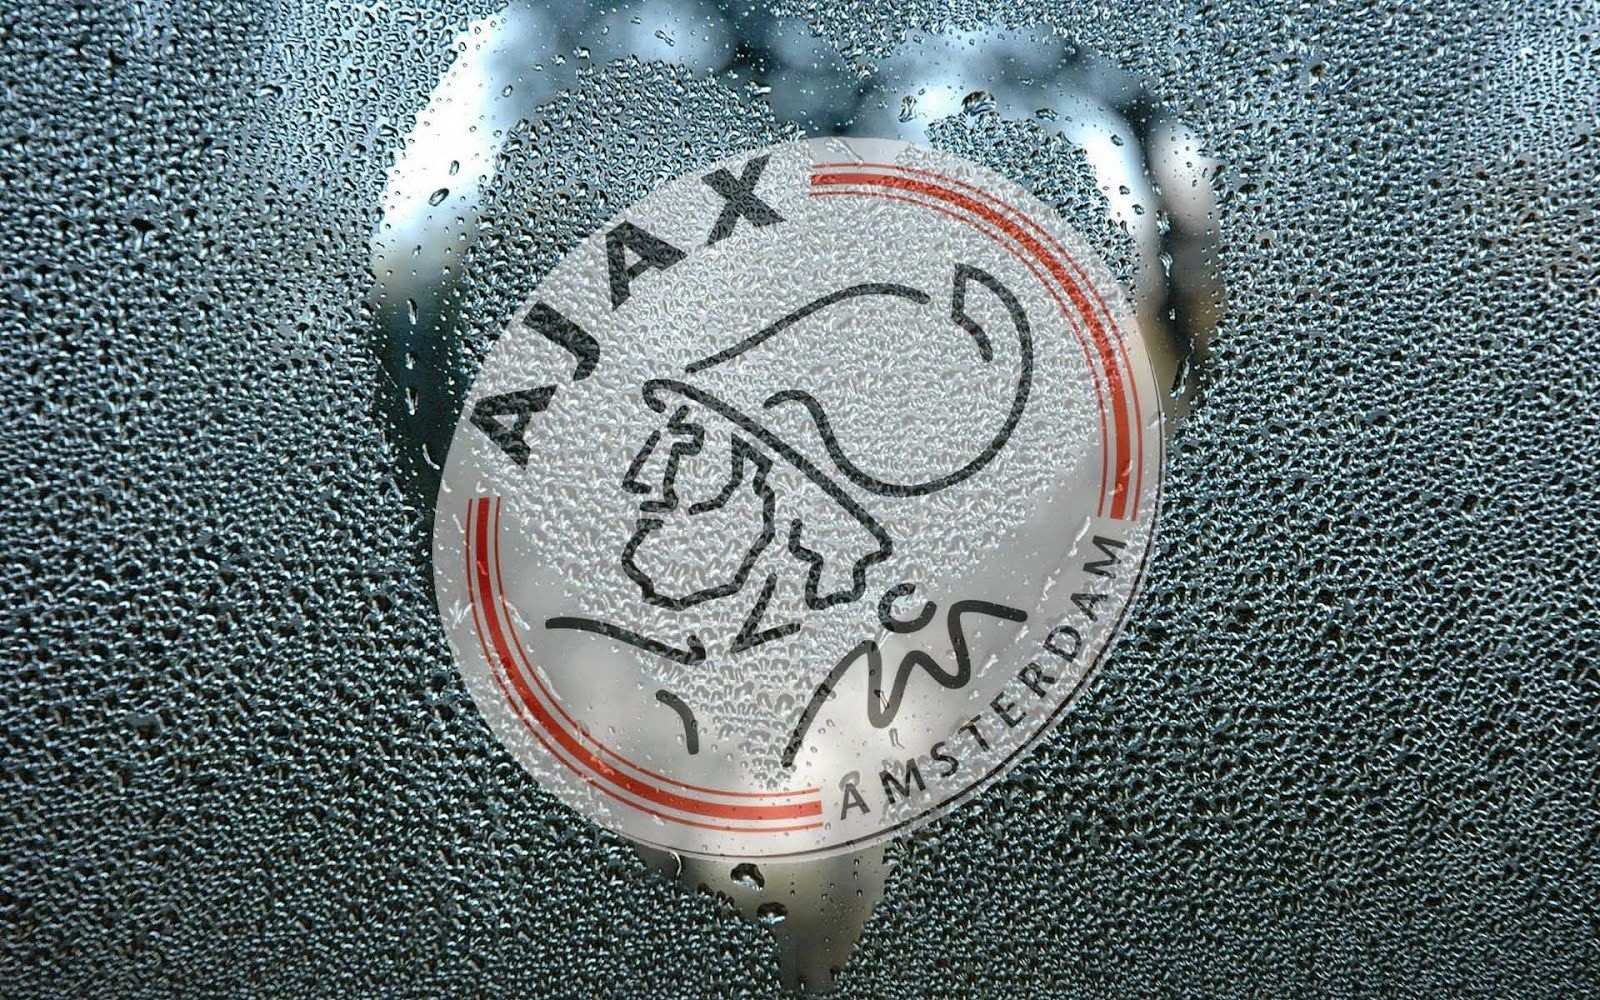 Best Of Ajax Wallpaper HD. Great Foofball Club